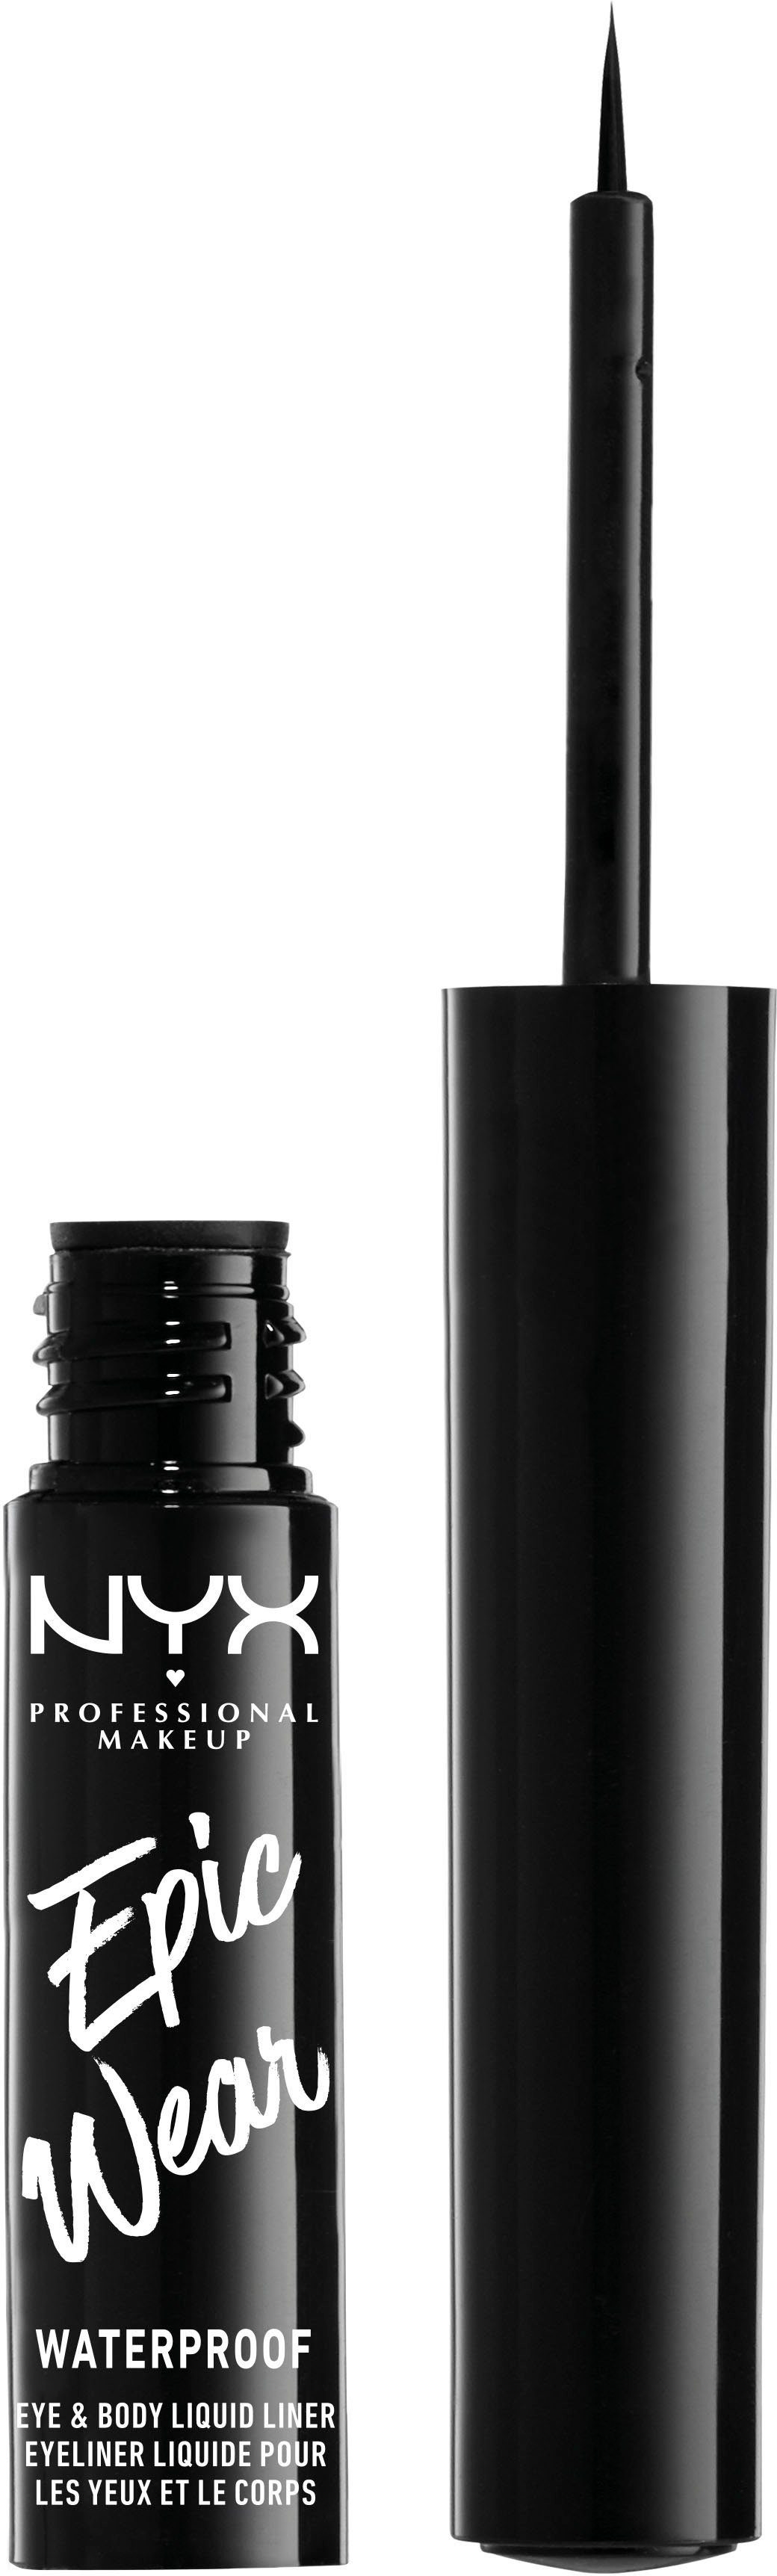 Professional Wear Black Makeup 01 Liner, Waterproof NYX Epic Eyeliner Liquid